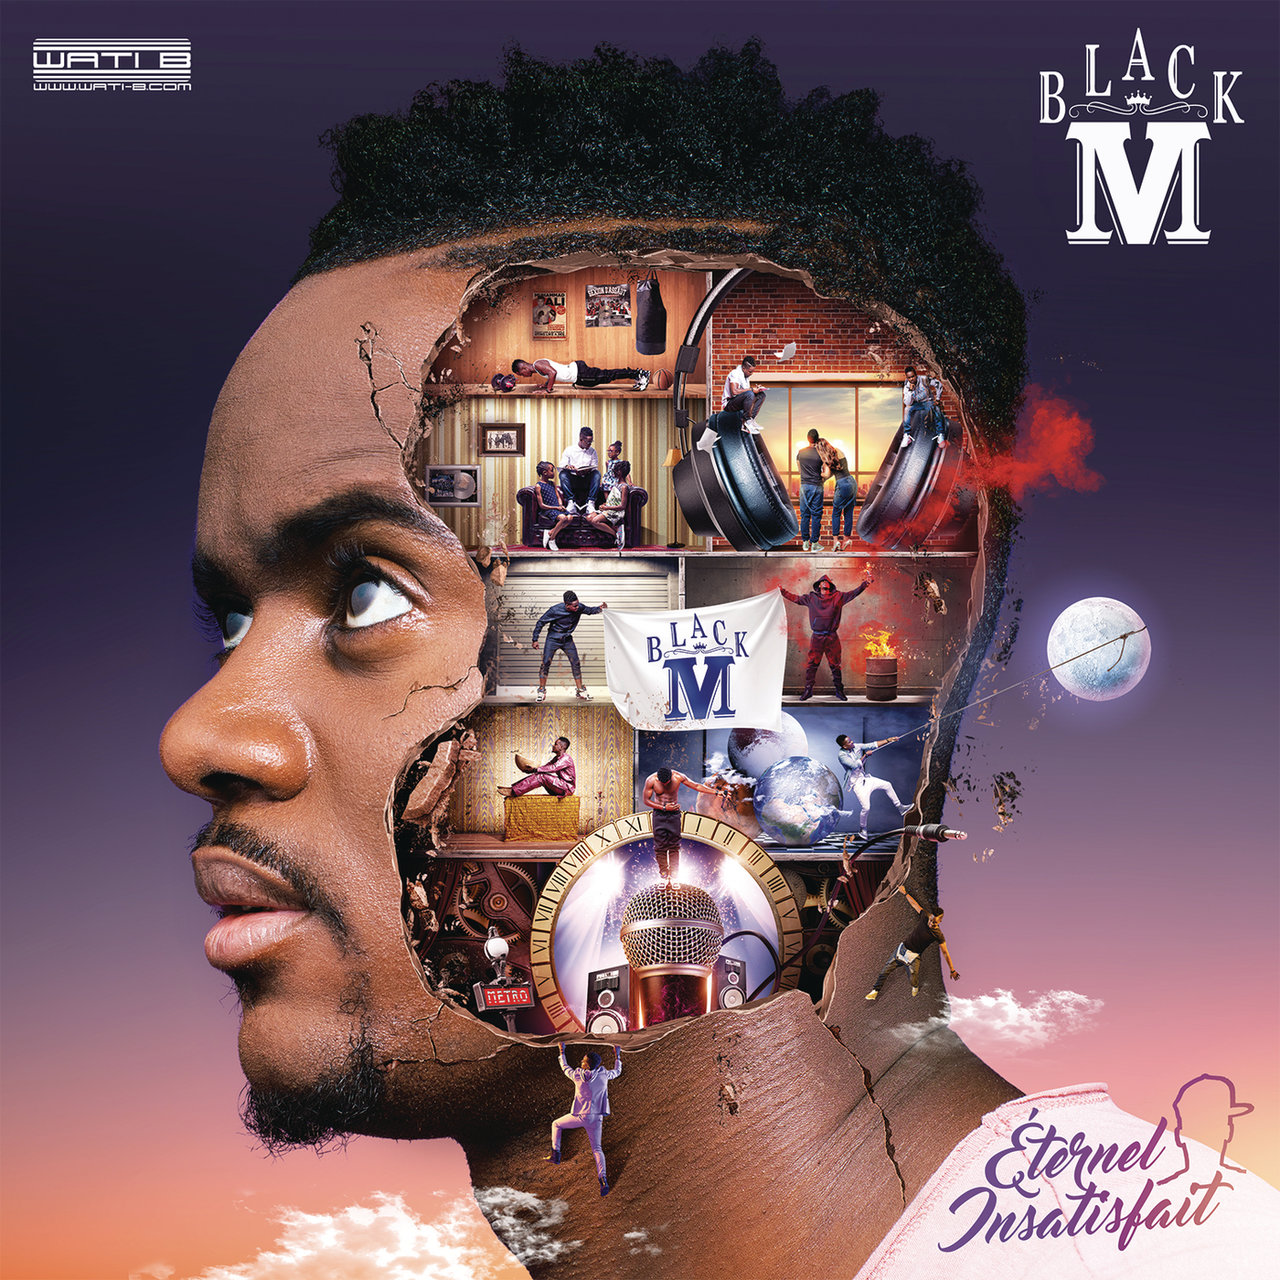 Black M Éternel insatisfait cover artwork